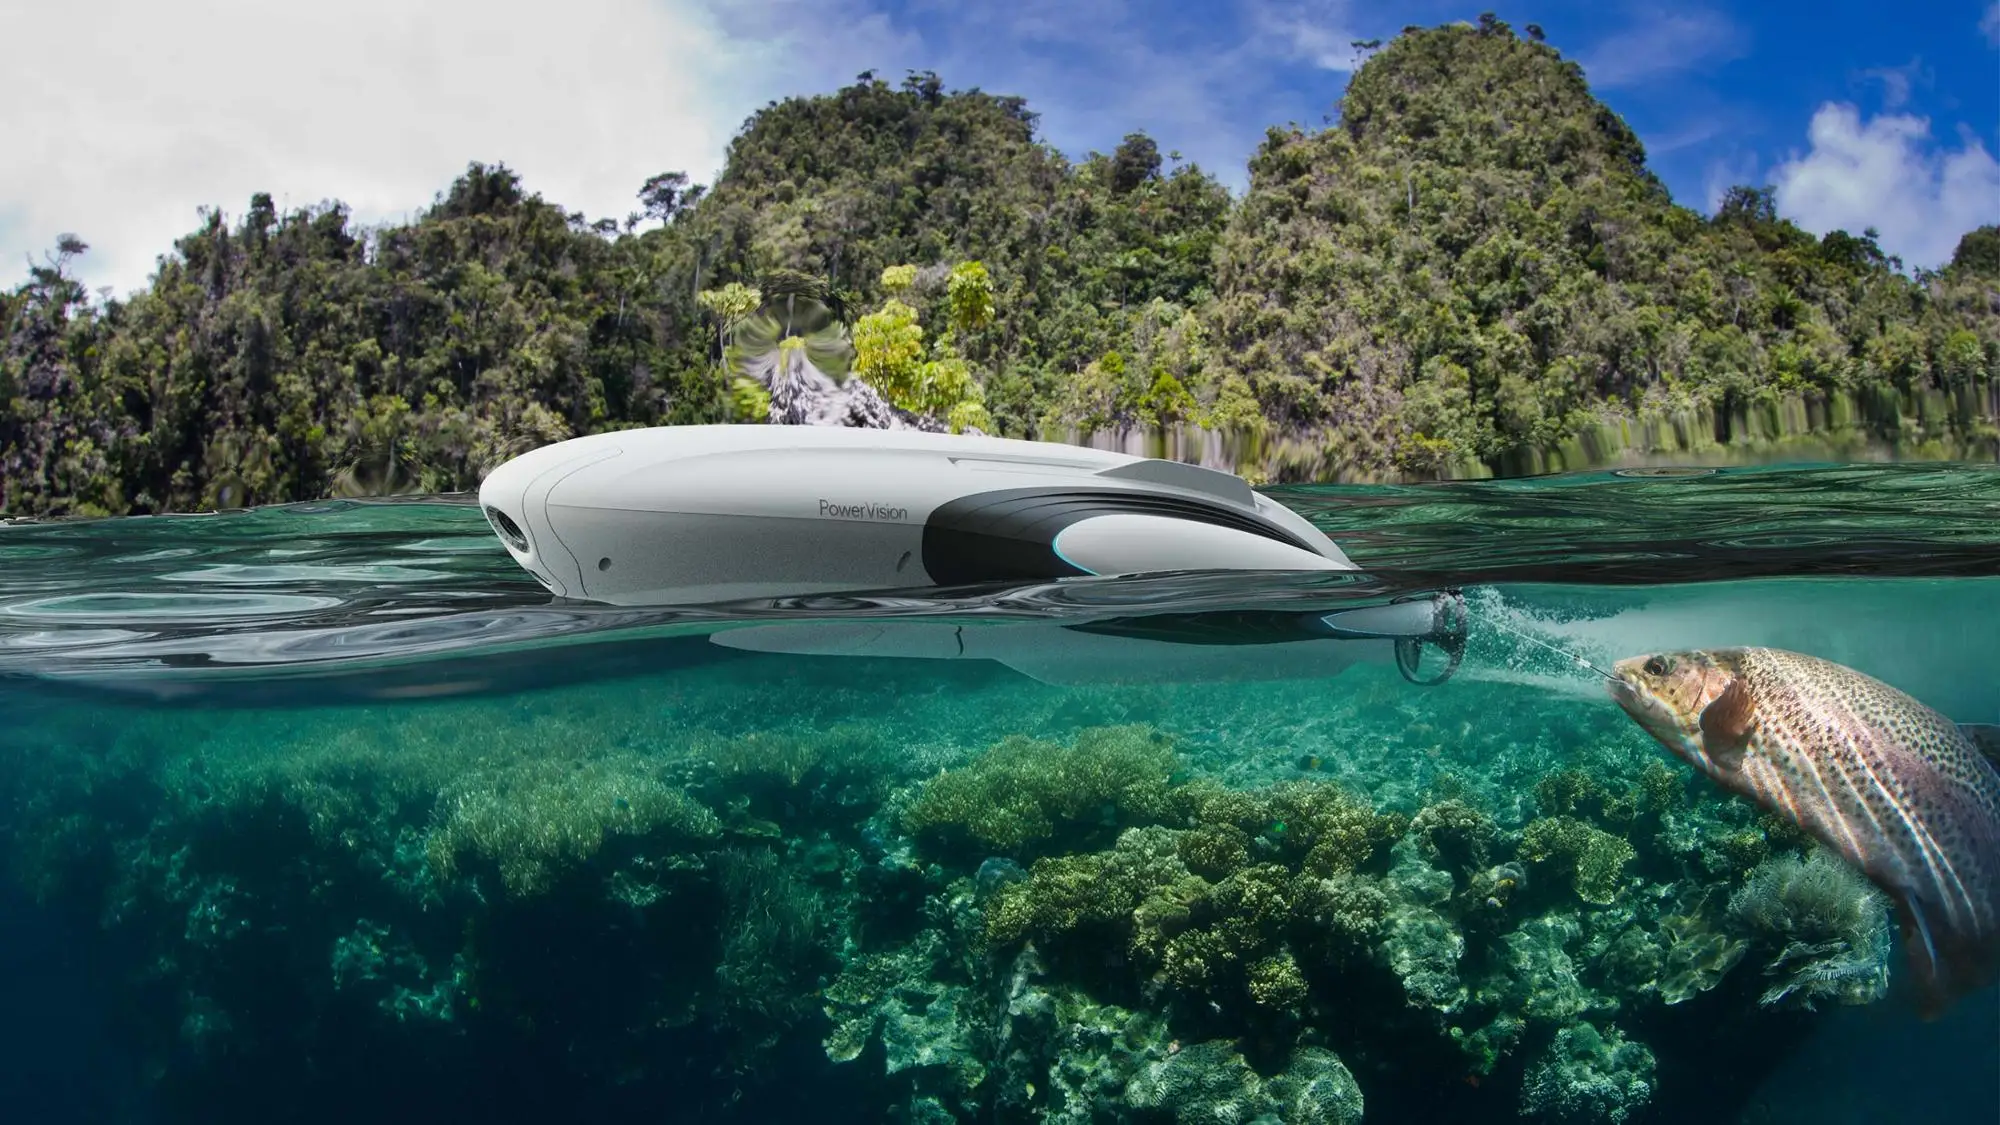 Source Powervision underwater Drone PowerDolphin Wizard Power